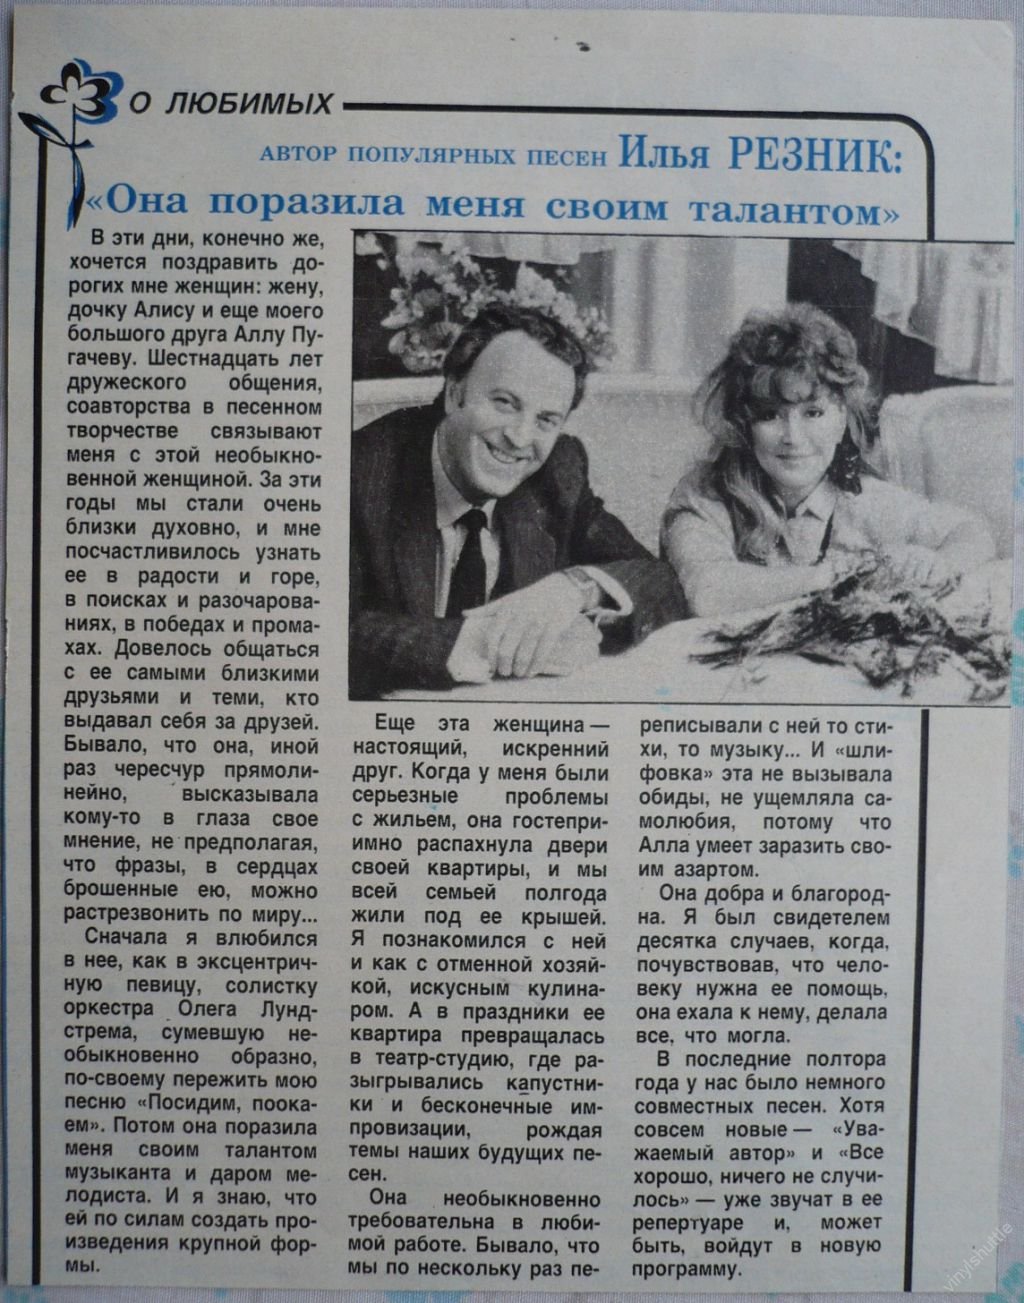 Вырезка из журнала Крестьянка 1988 год